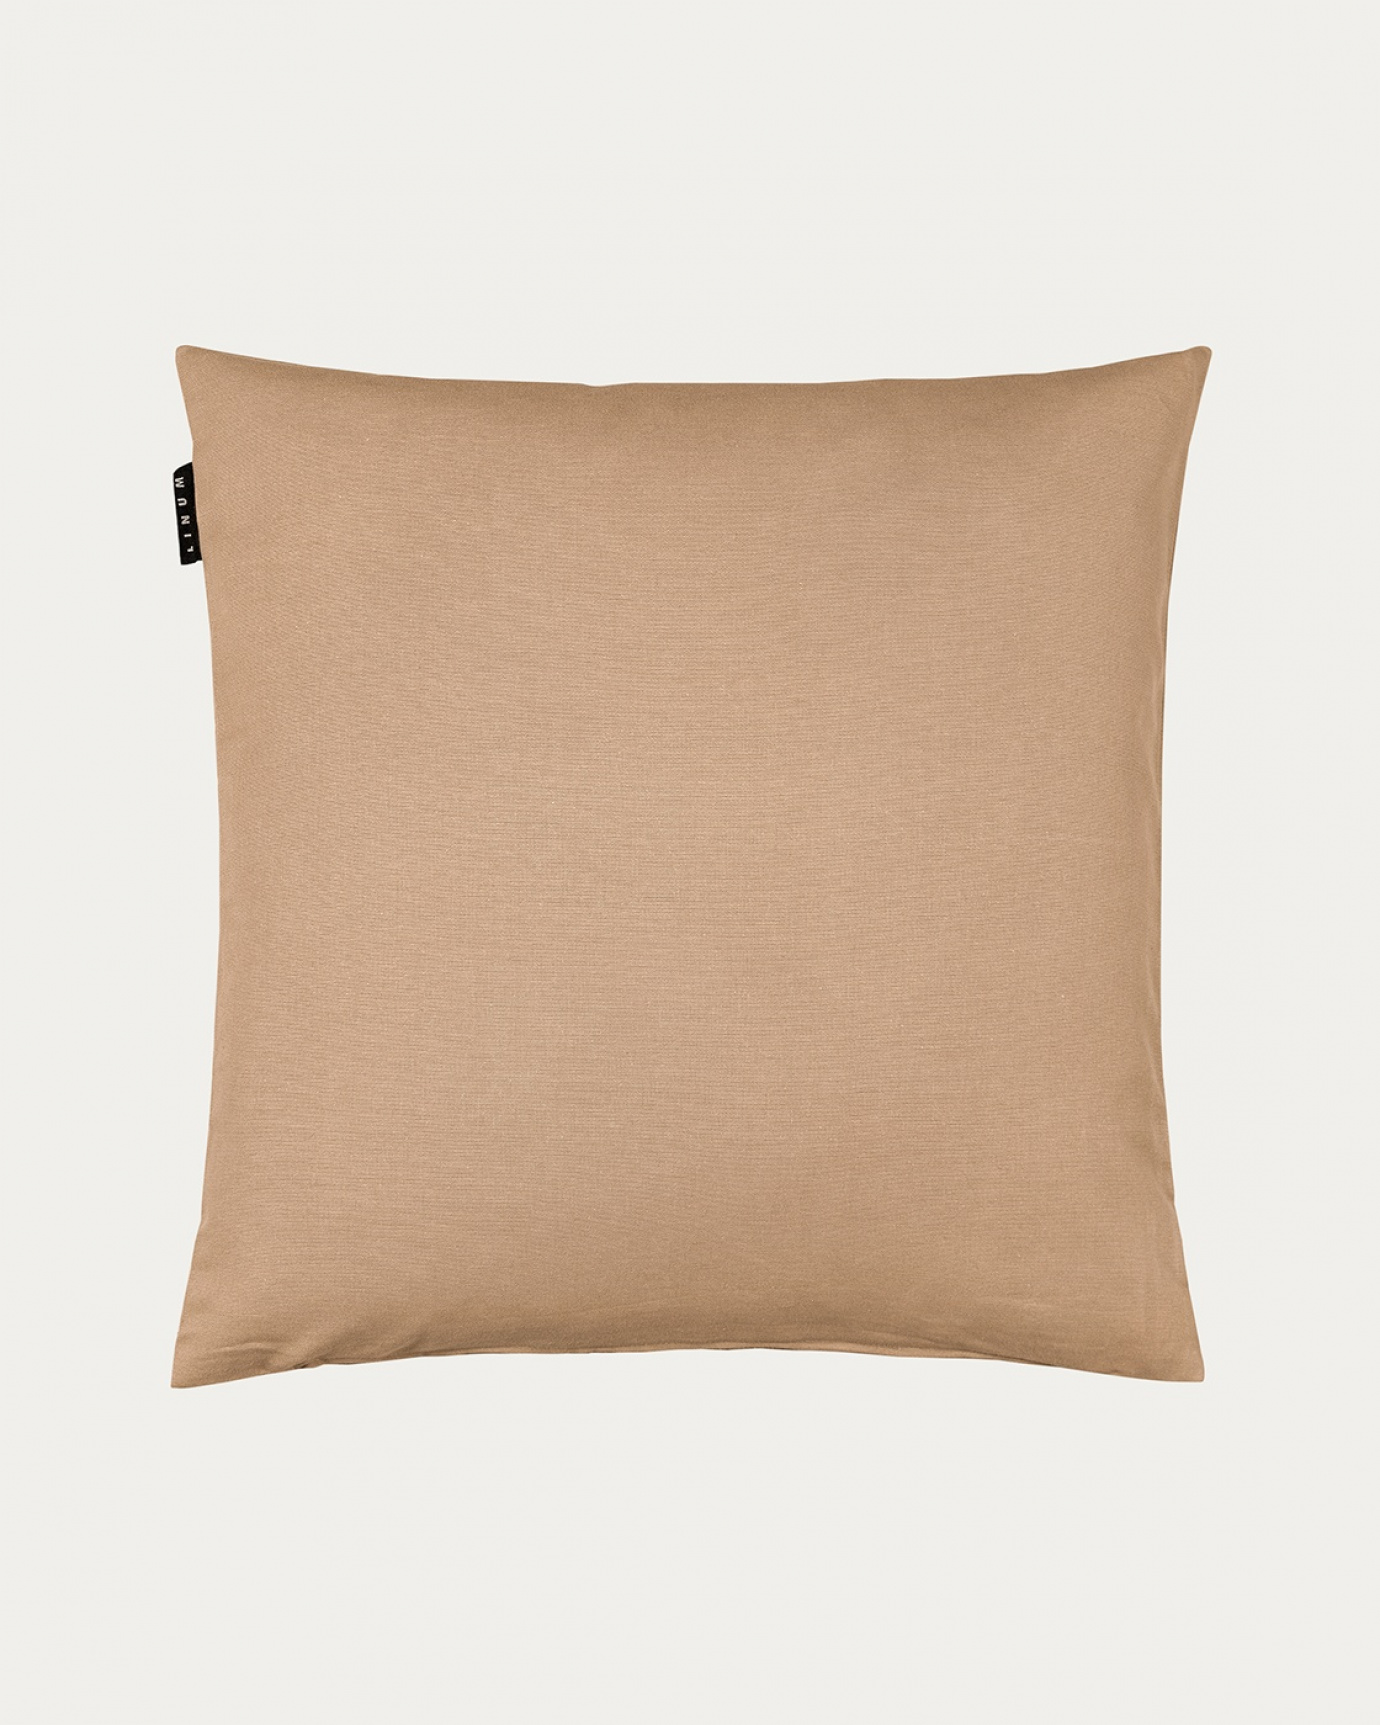 Produktbild kamelbraun ANNABELL Kissenhülle aus weicher Baumwolle von LINUM DESIGN. Größe 50x50 cm.